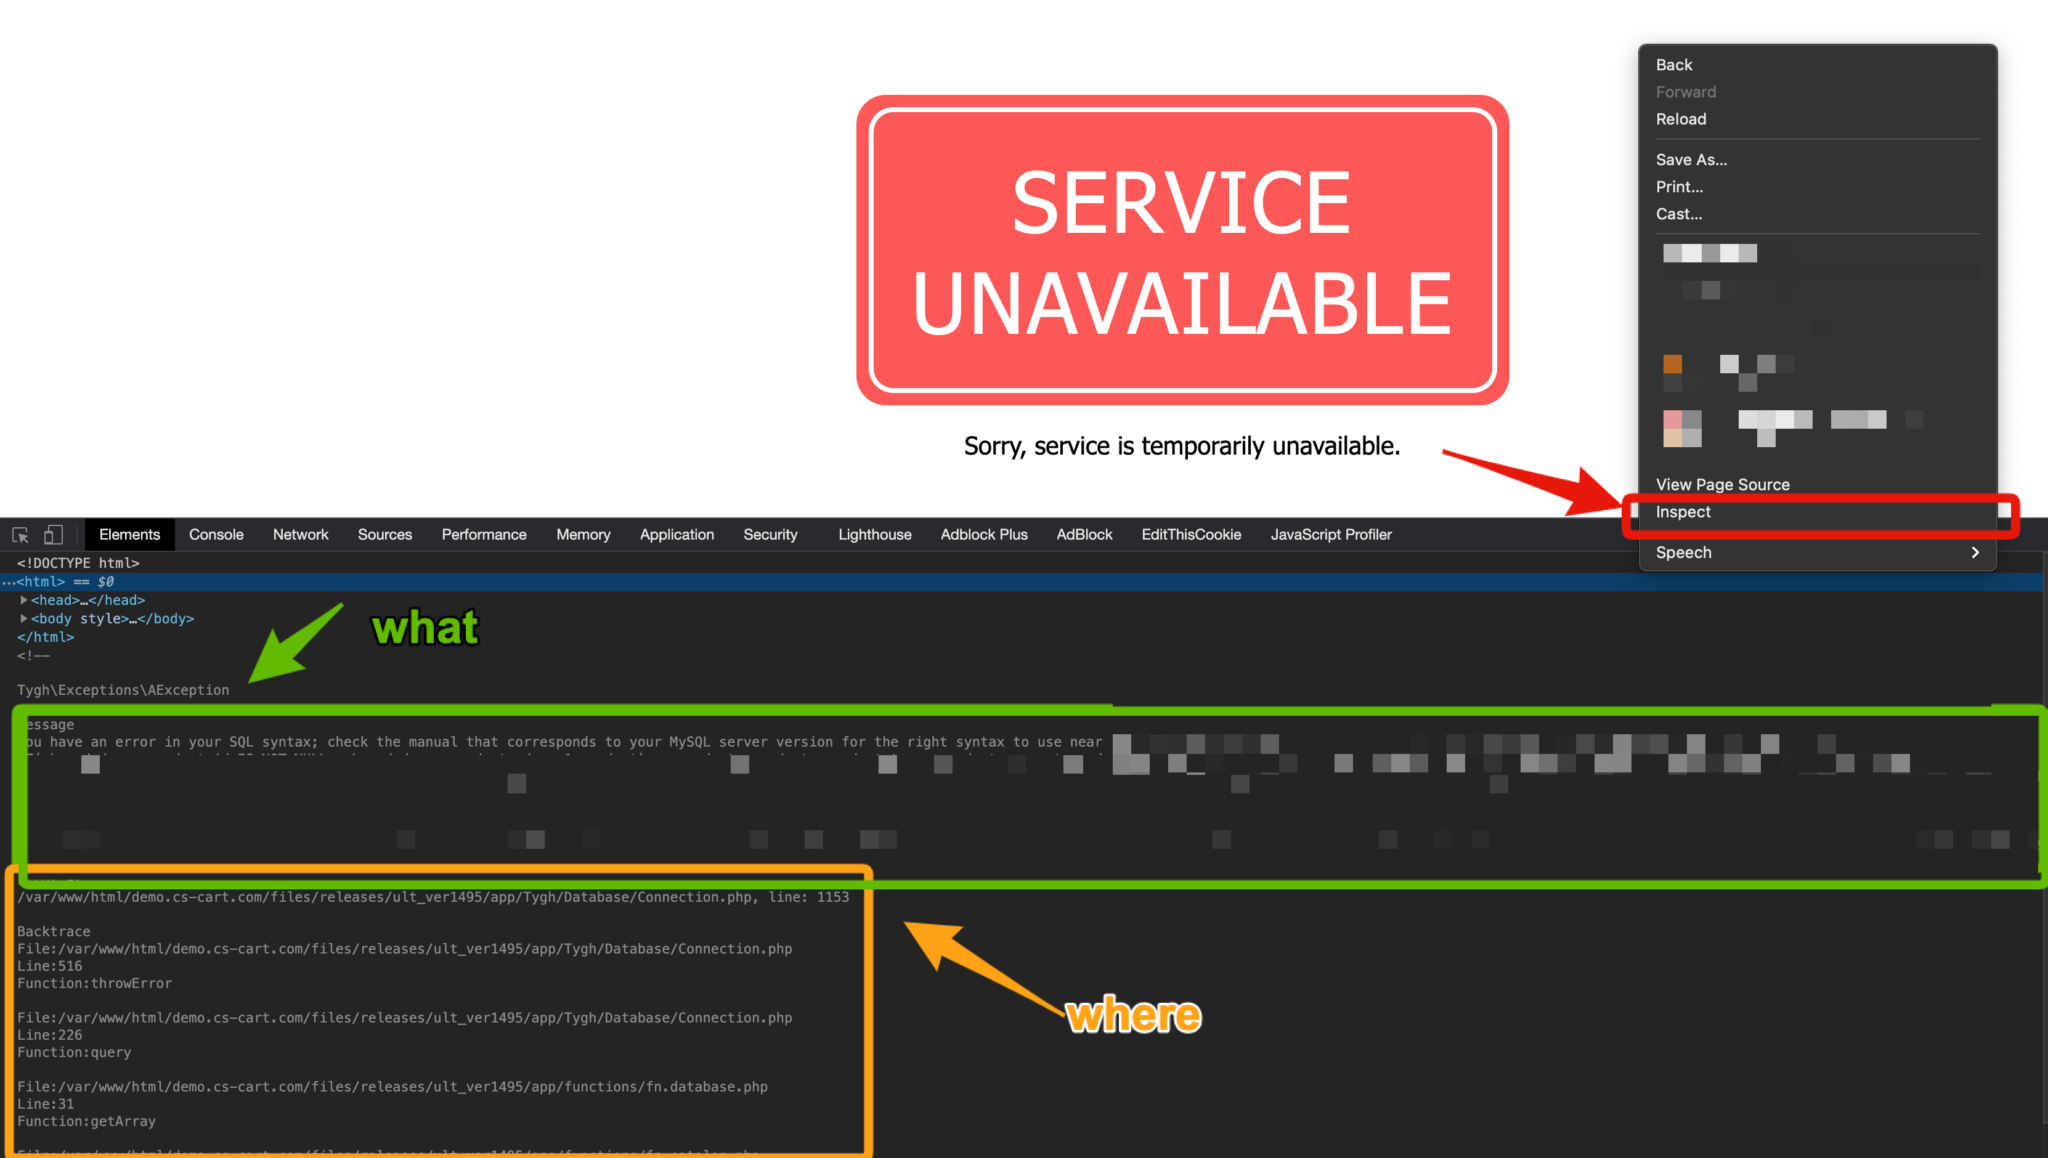 App unavailable. CS Cart service unavailable. Cloudflare 503 service unavailable. Unavailable.e. Postimg грузит фото ошибка 503 service unavailable.